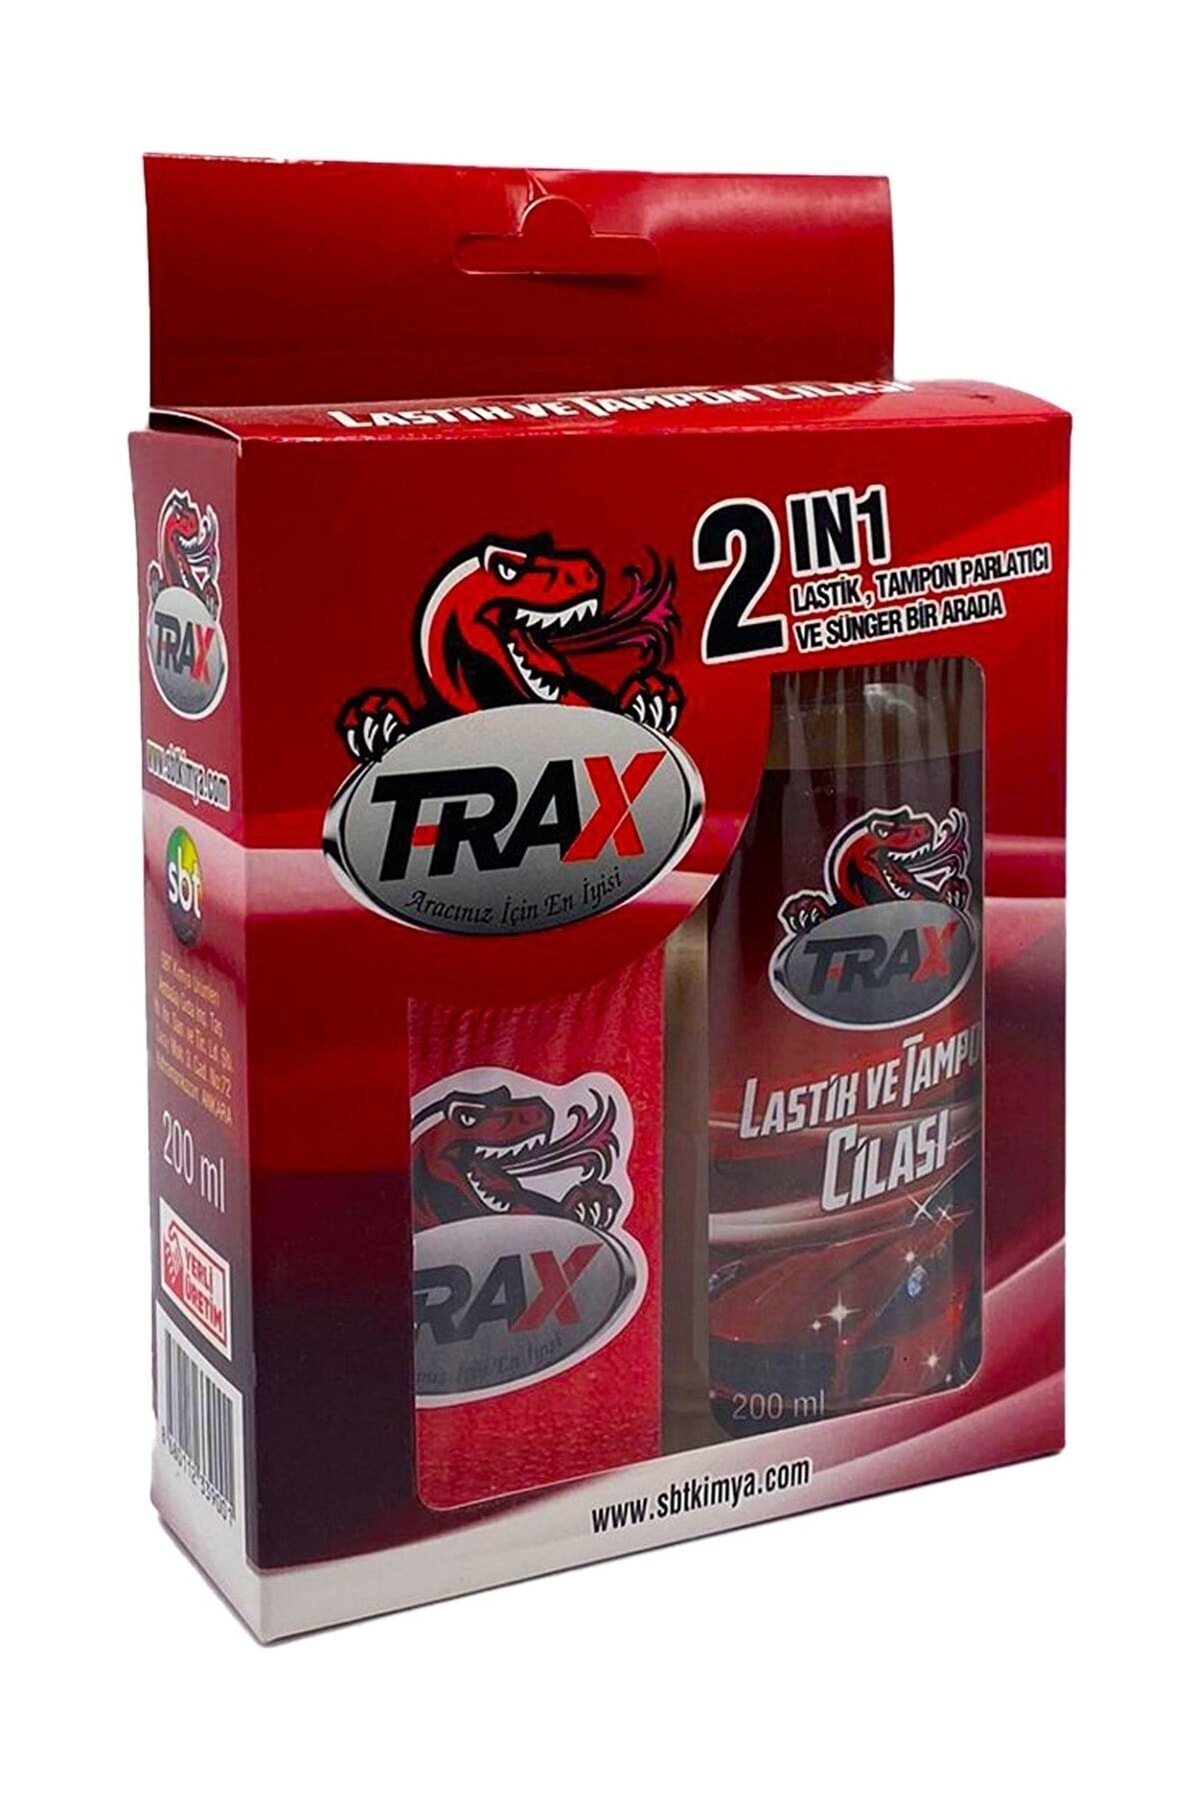 ARACINIZ İÇİN EN İYİSİ T-RAX Trax Ikili Paket 2 In 1 Oto Lastik Tampon Plastik Deri Parlatıcı Koruycu Süngerli Cila Paket